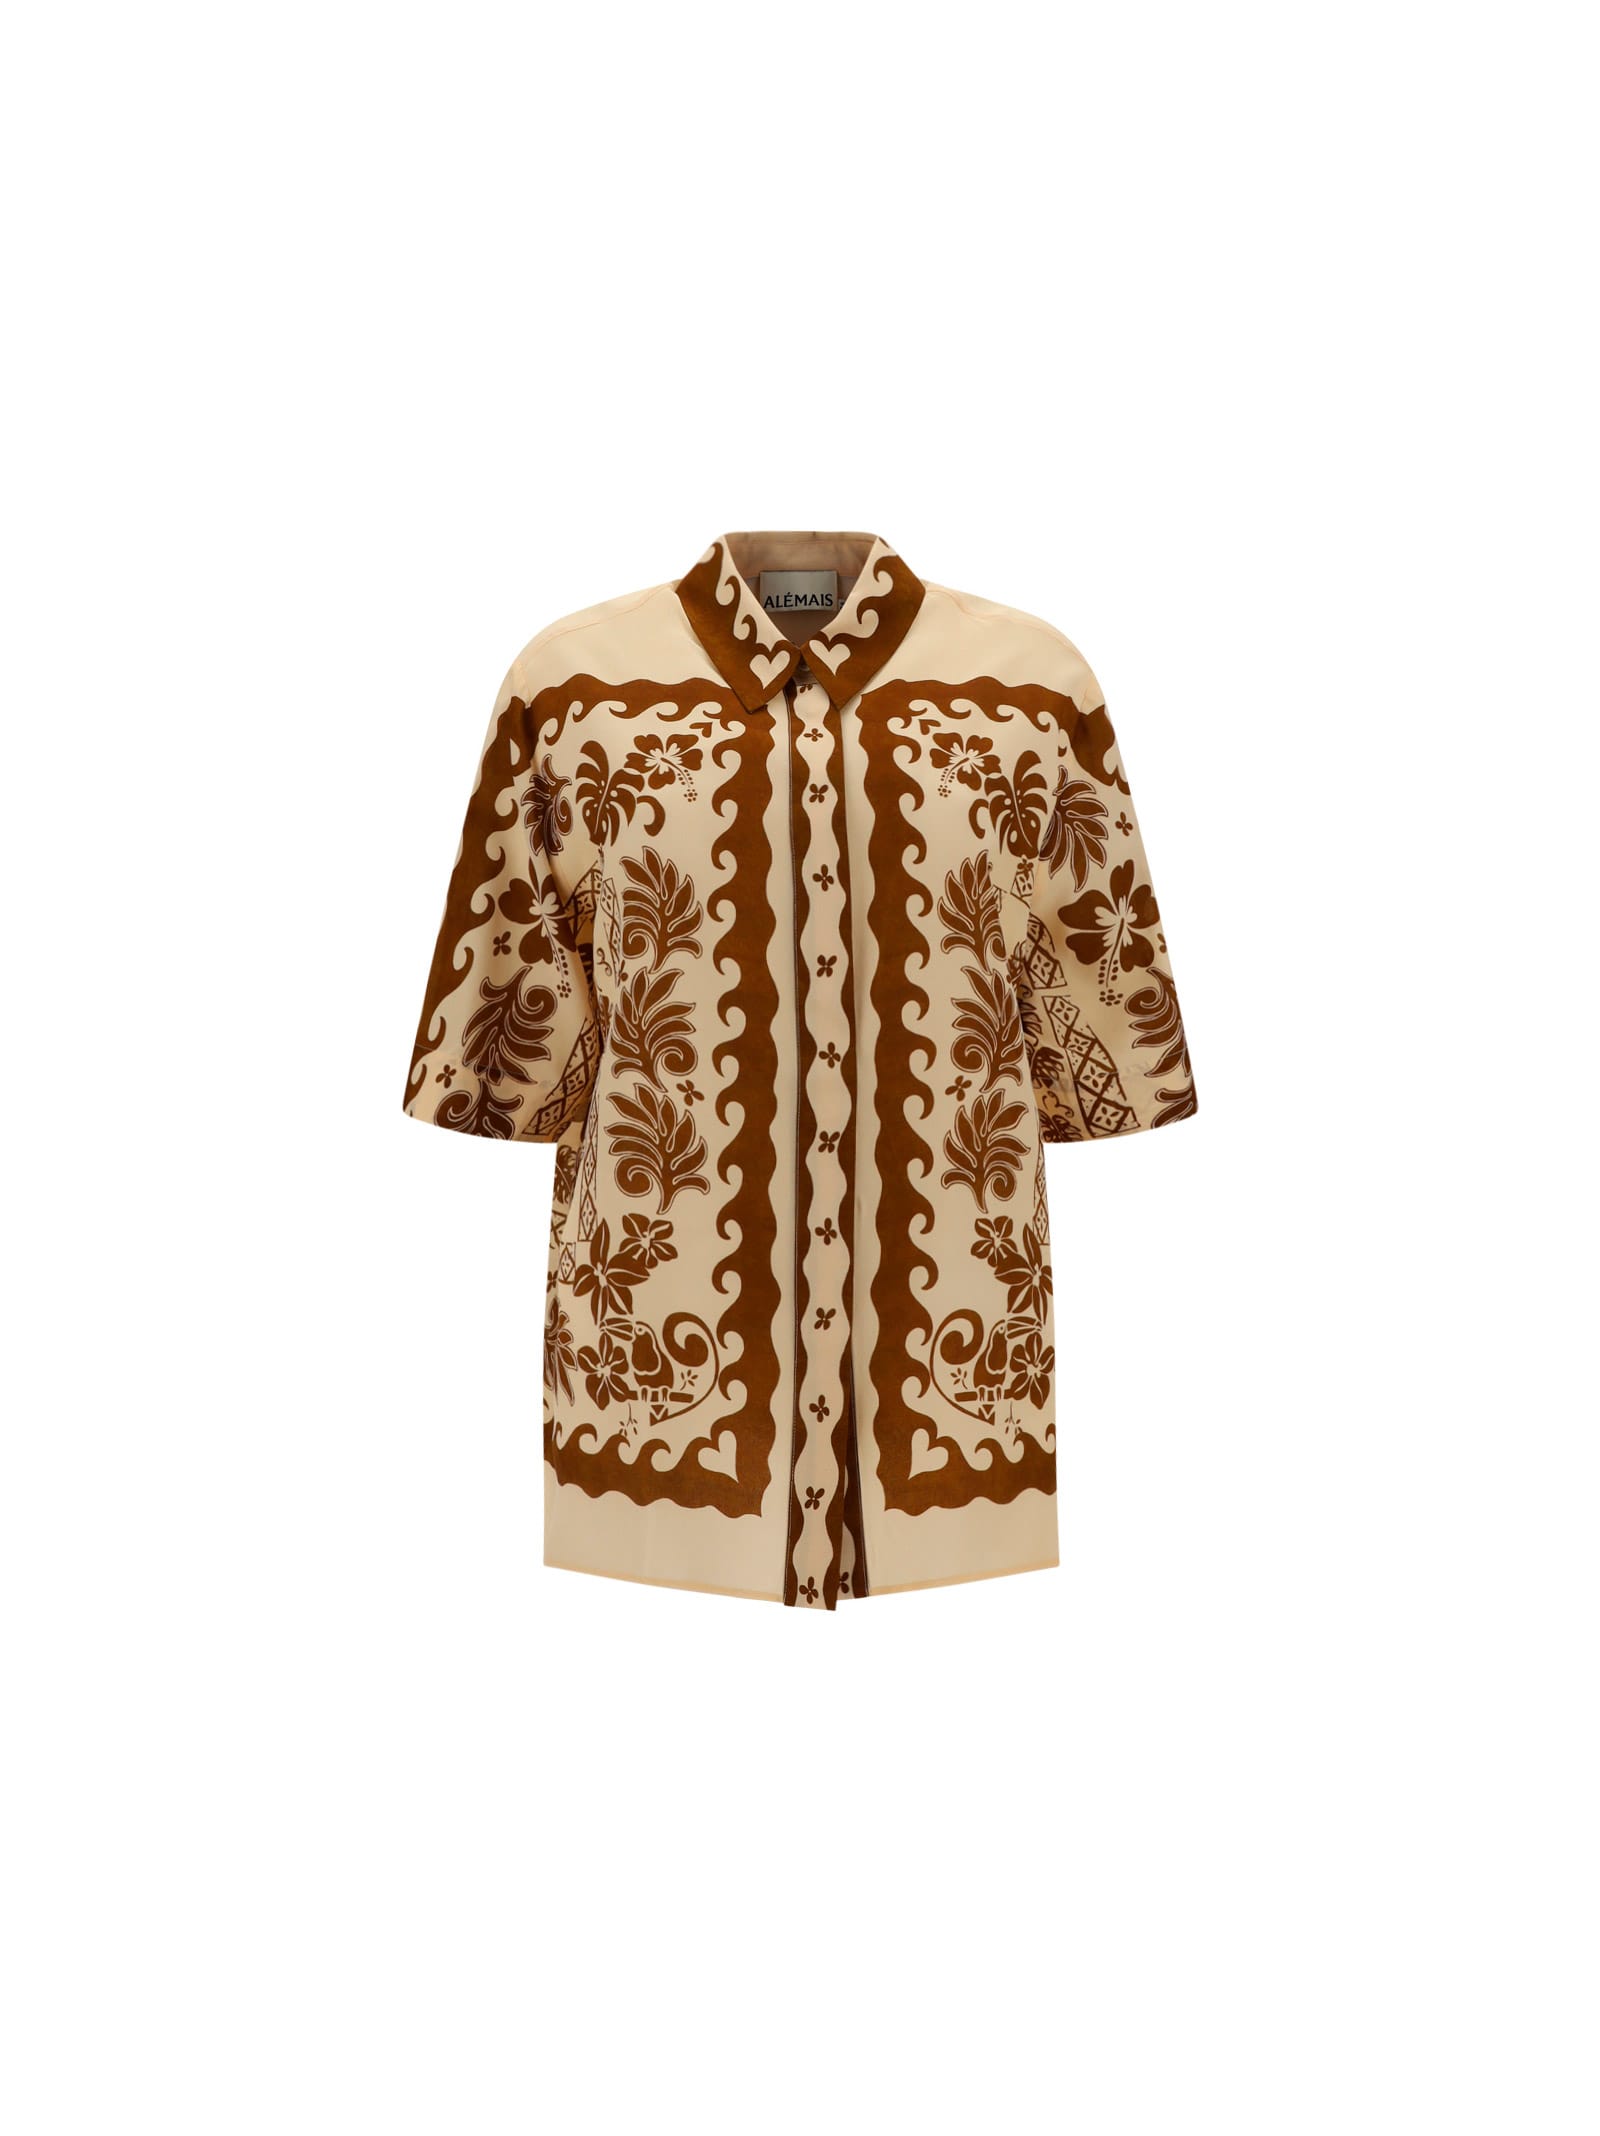 ALEMAIS Tropic Shirt